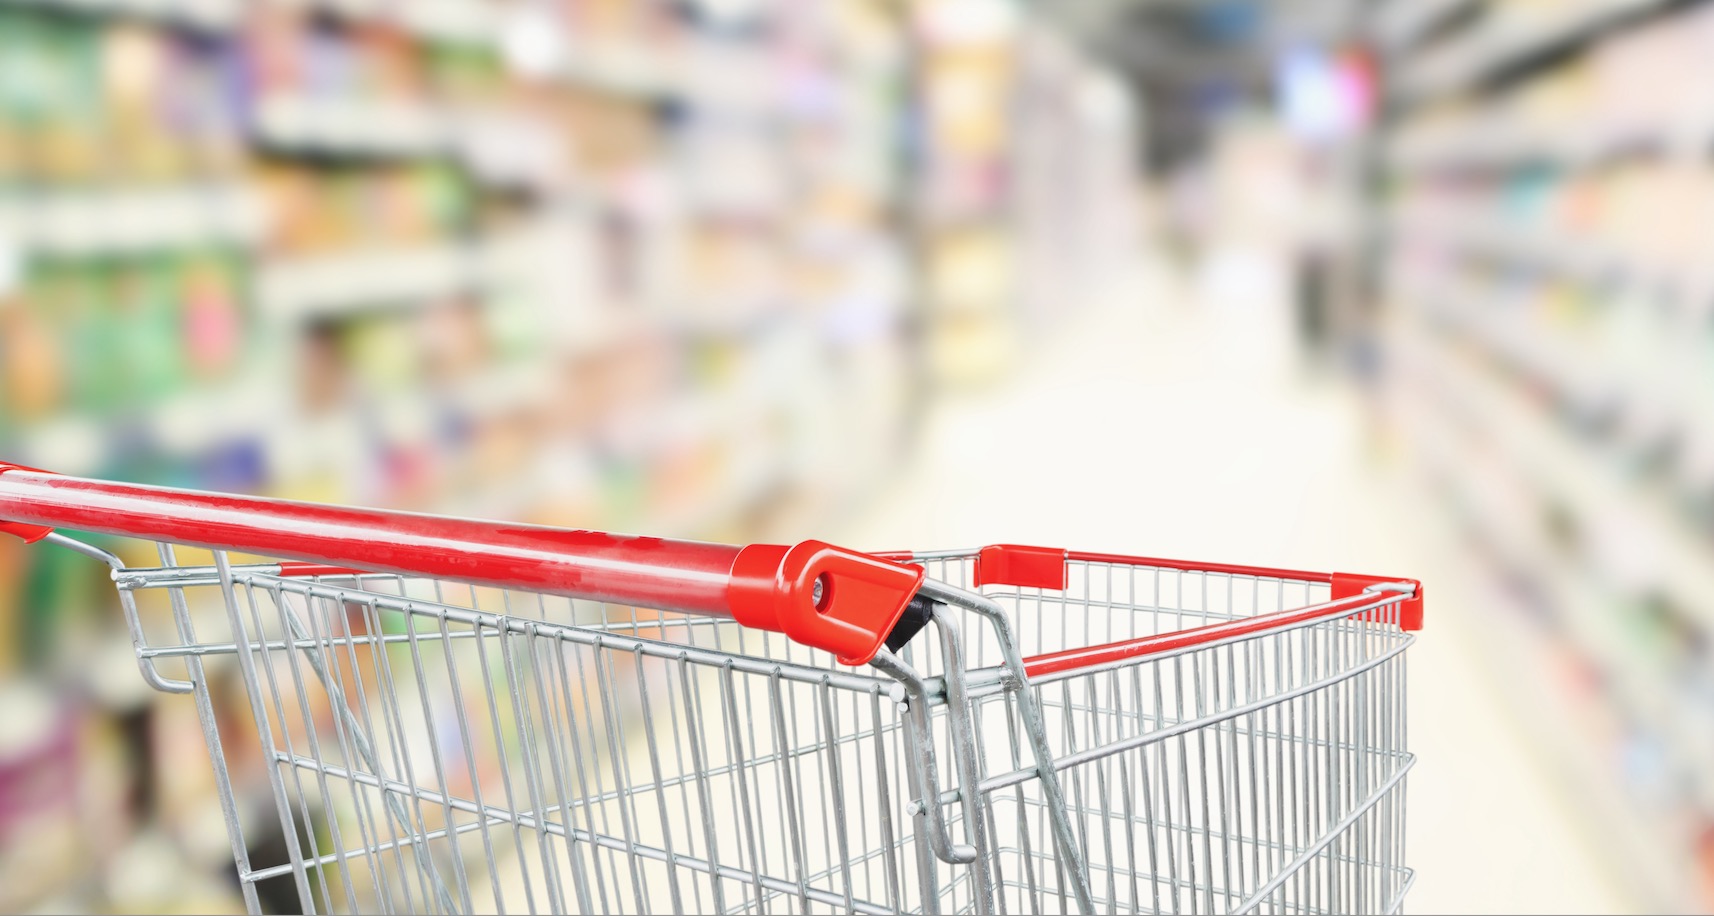 GroupM Recession Monitor: hoe zit het met de aankopen in de supermarkt?